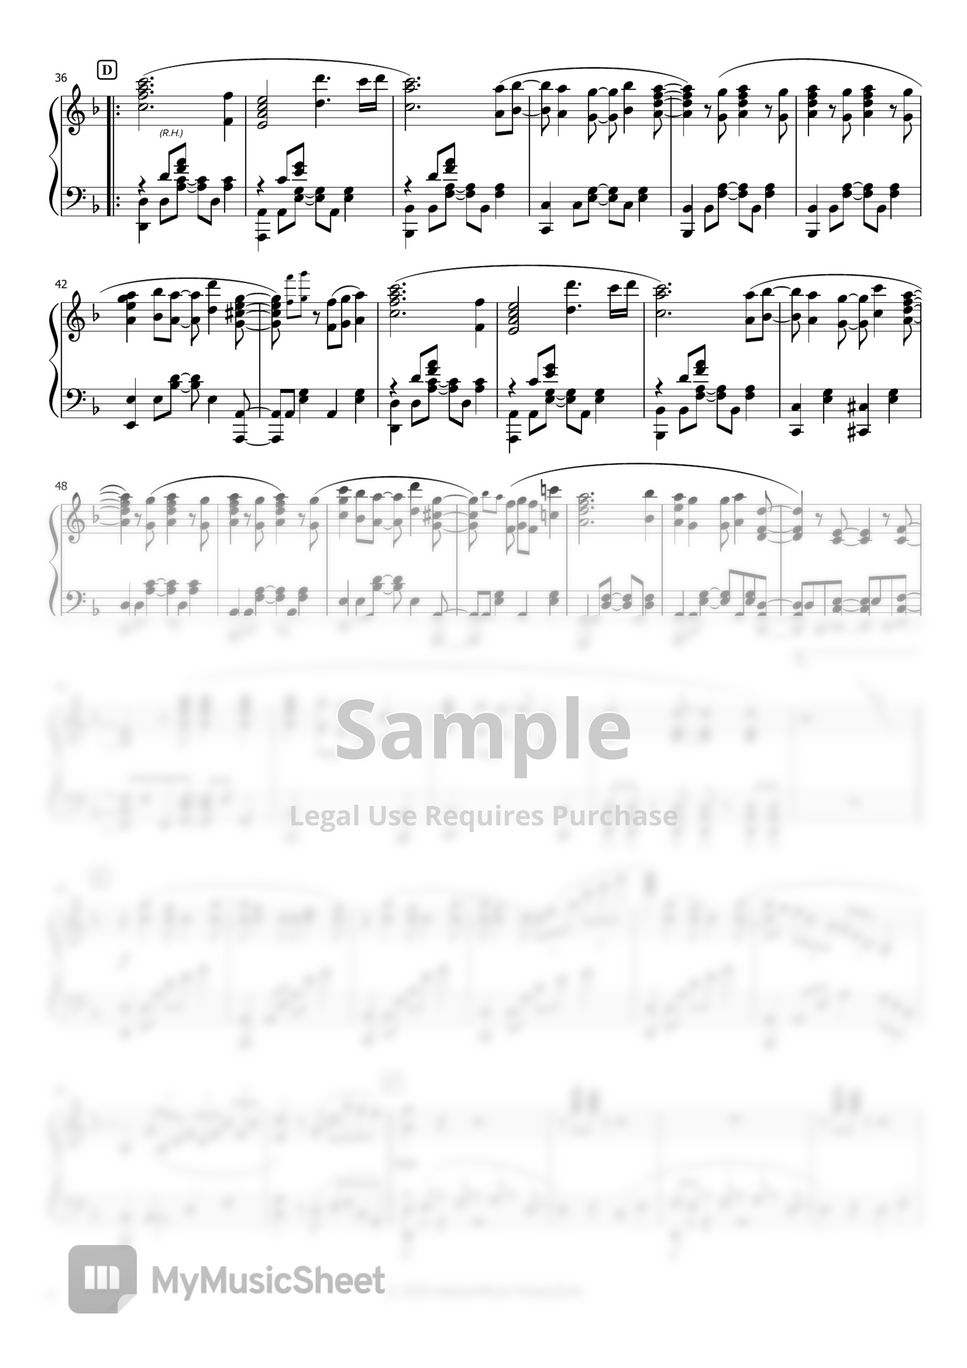 Crossing Field Sword Art Online OP Piano MIDI Sheet download Free